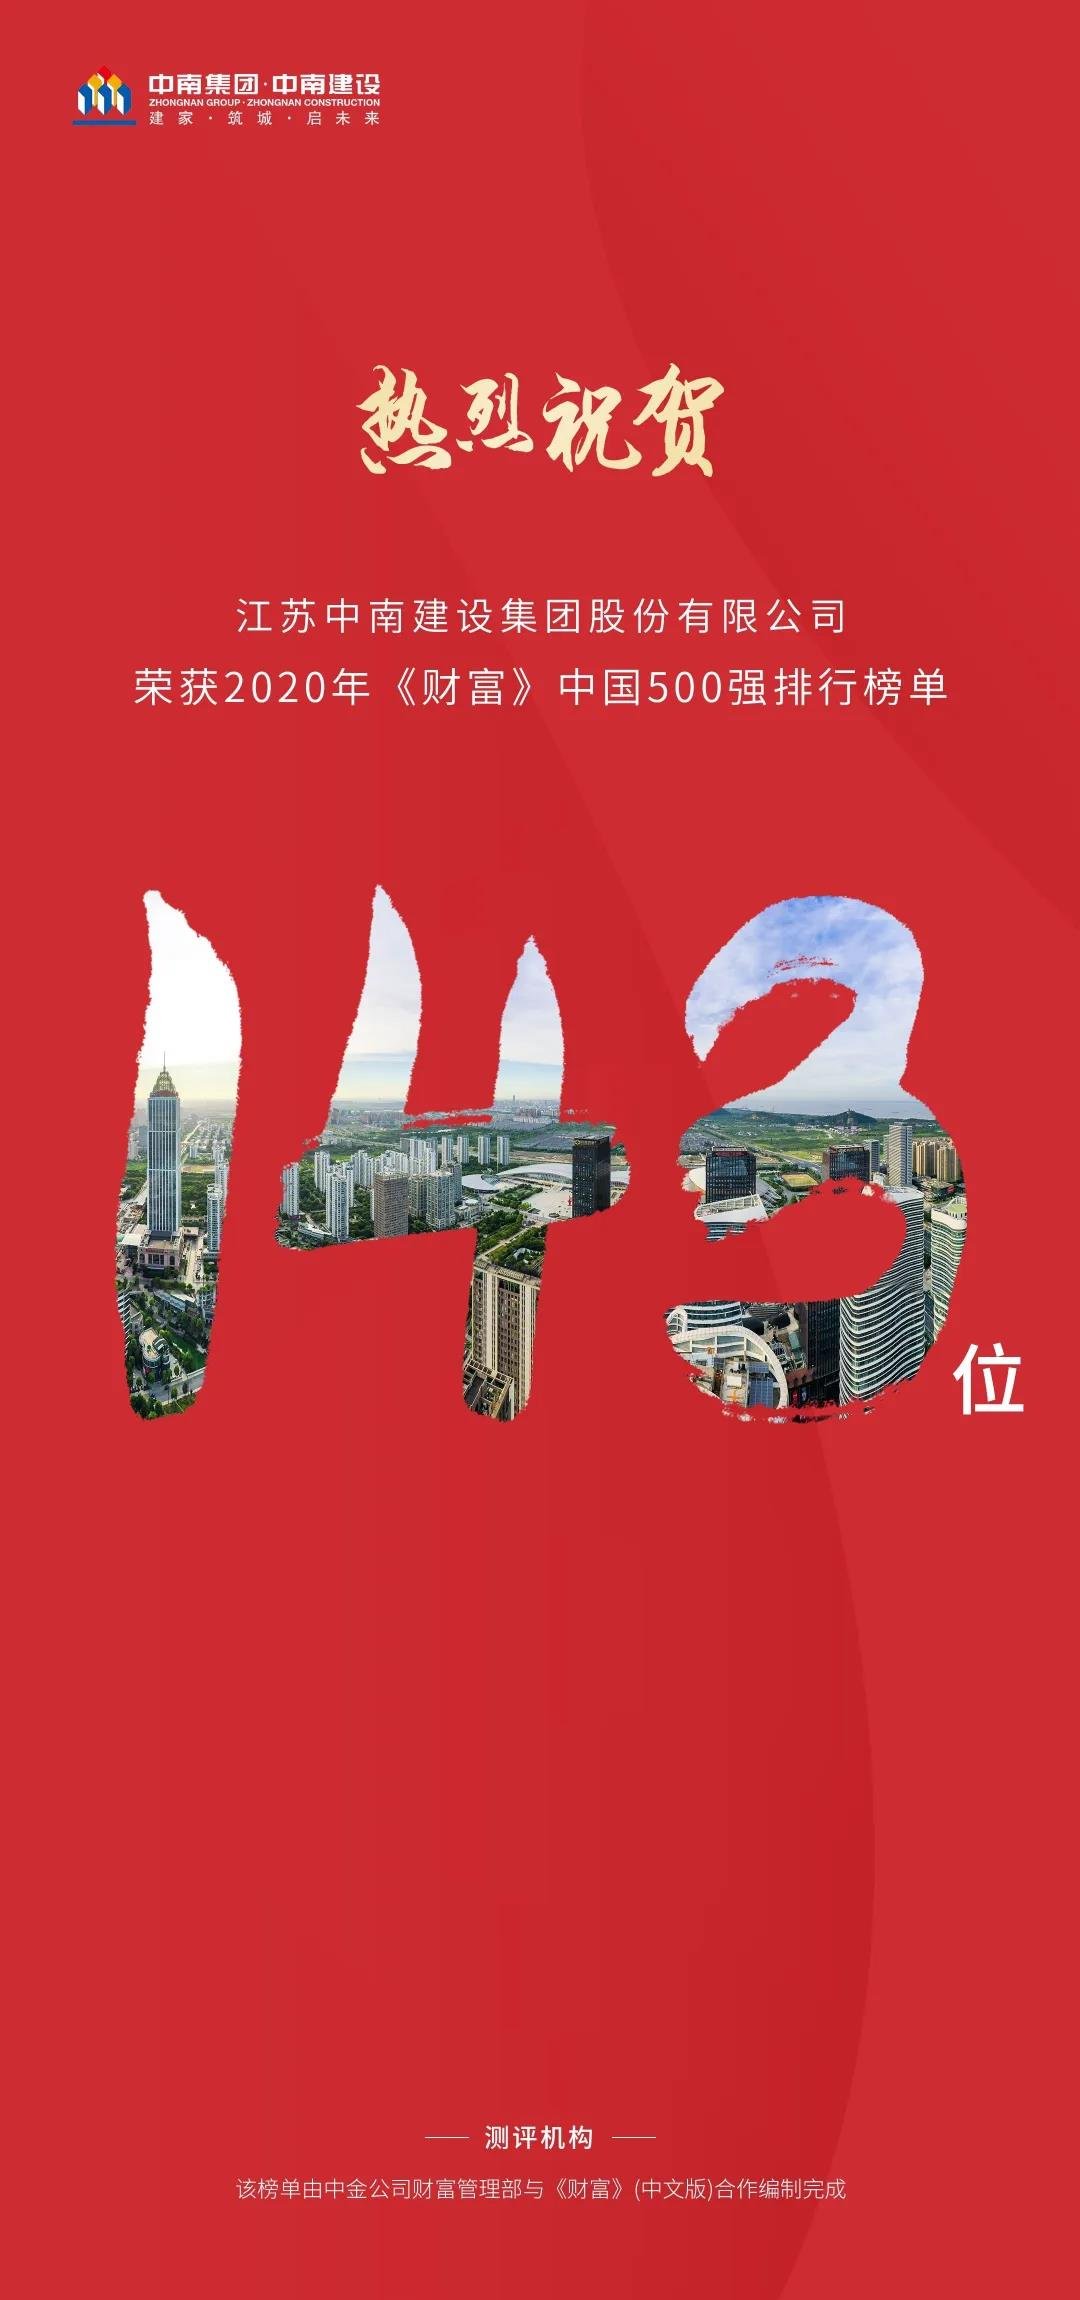 中南荣获2020年《财富》中国500强排行榜单第143位，排名跃升81位